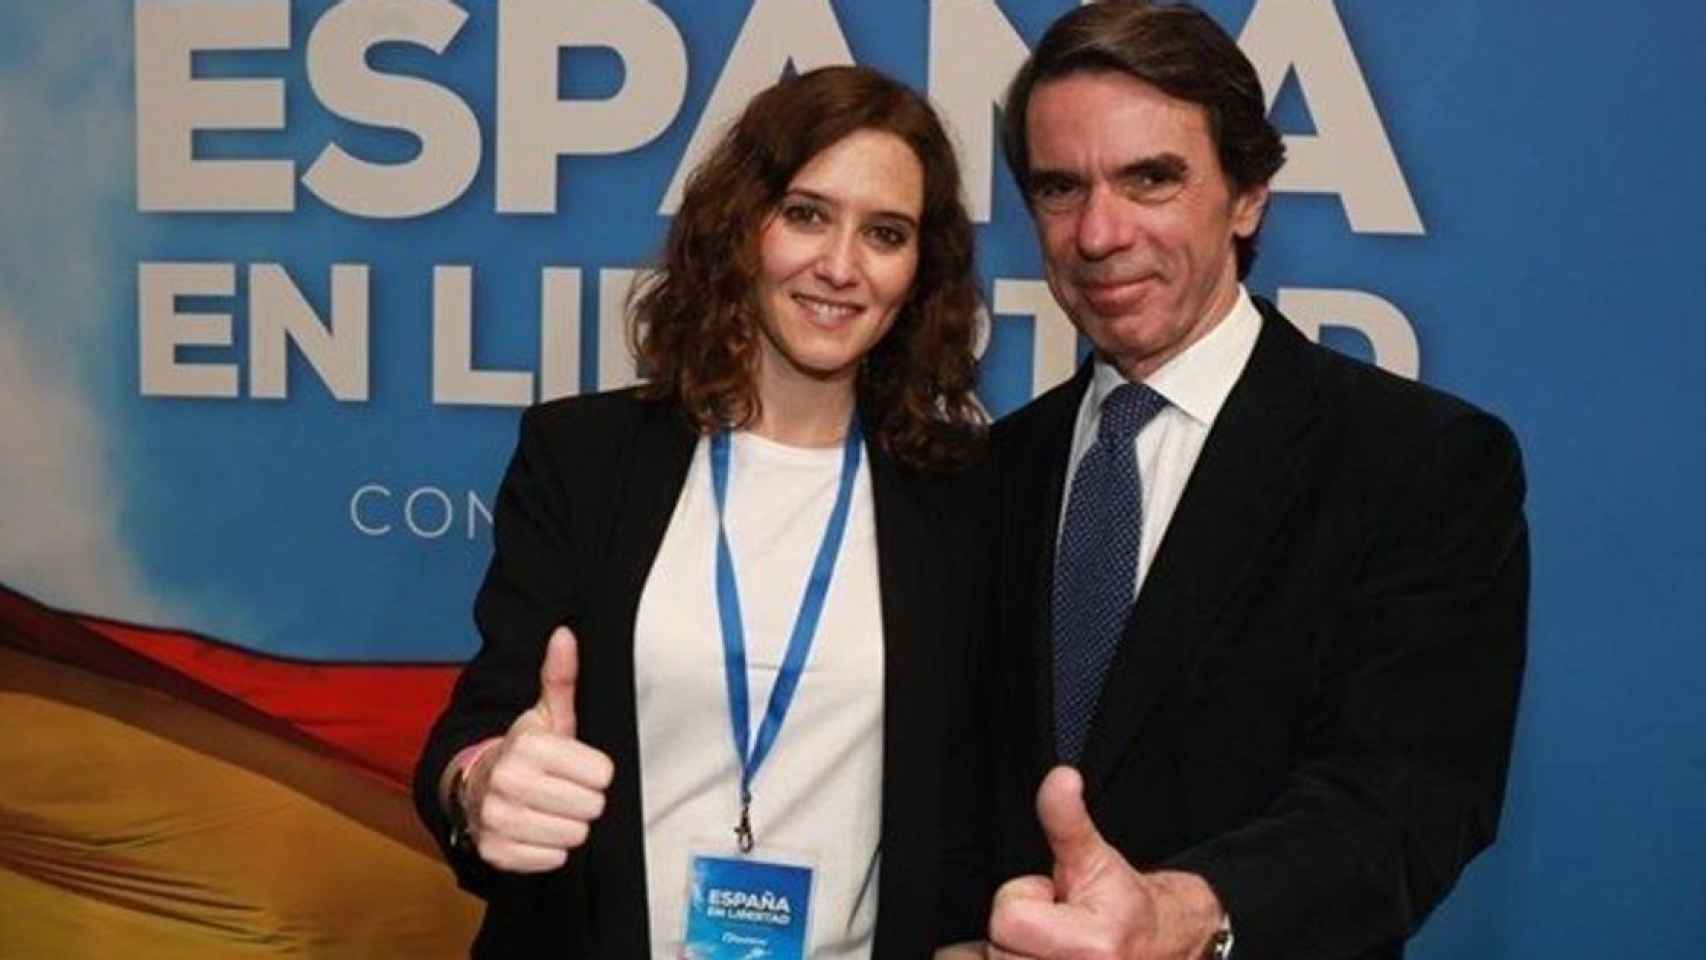 El expresidente José María Aznar con Isabel Díaz Ayuso, presidenta de la Comunidad de Madrid, en imagen de archivo.